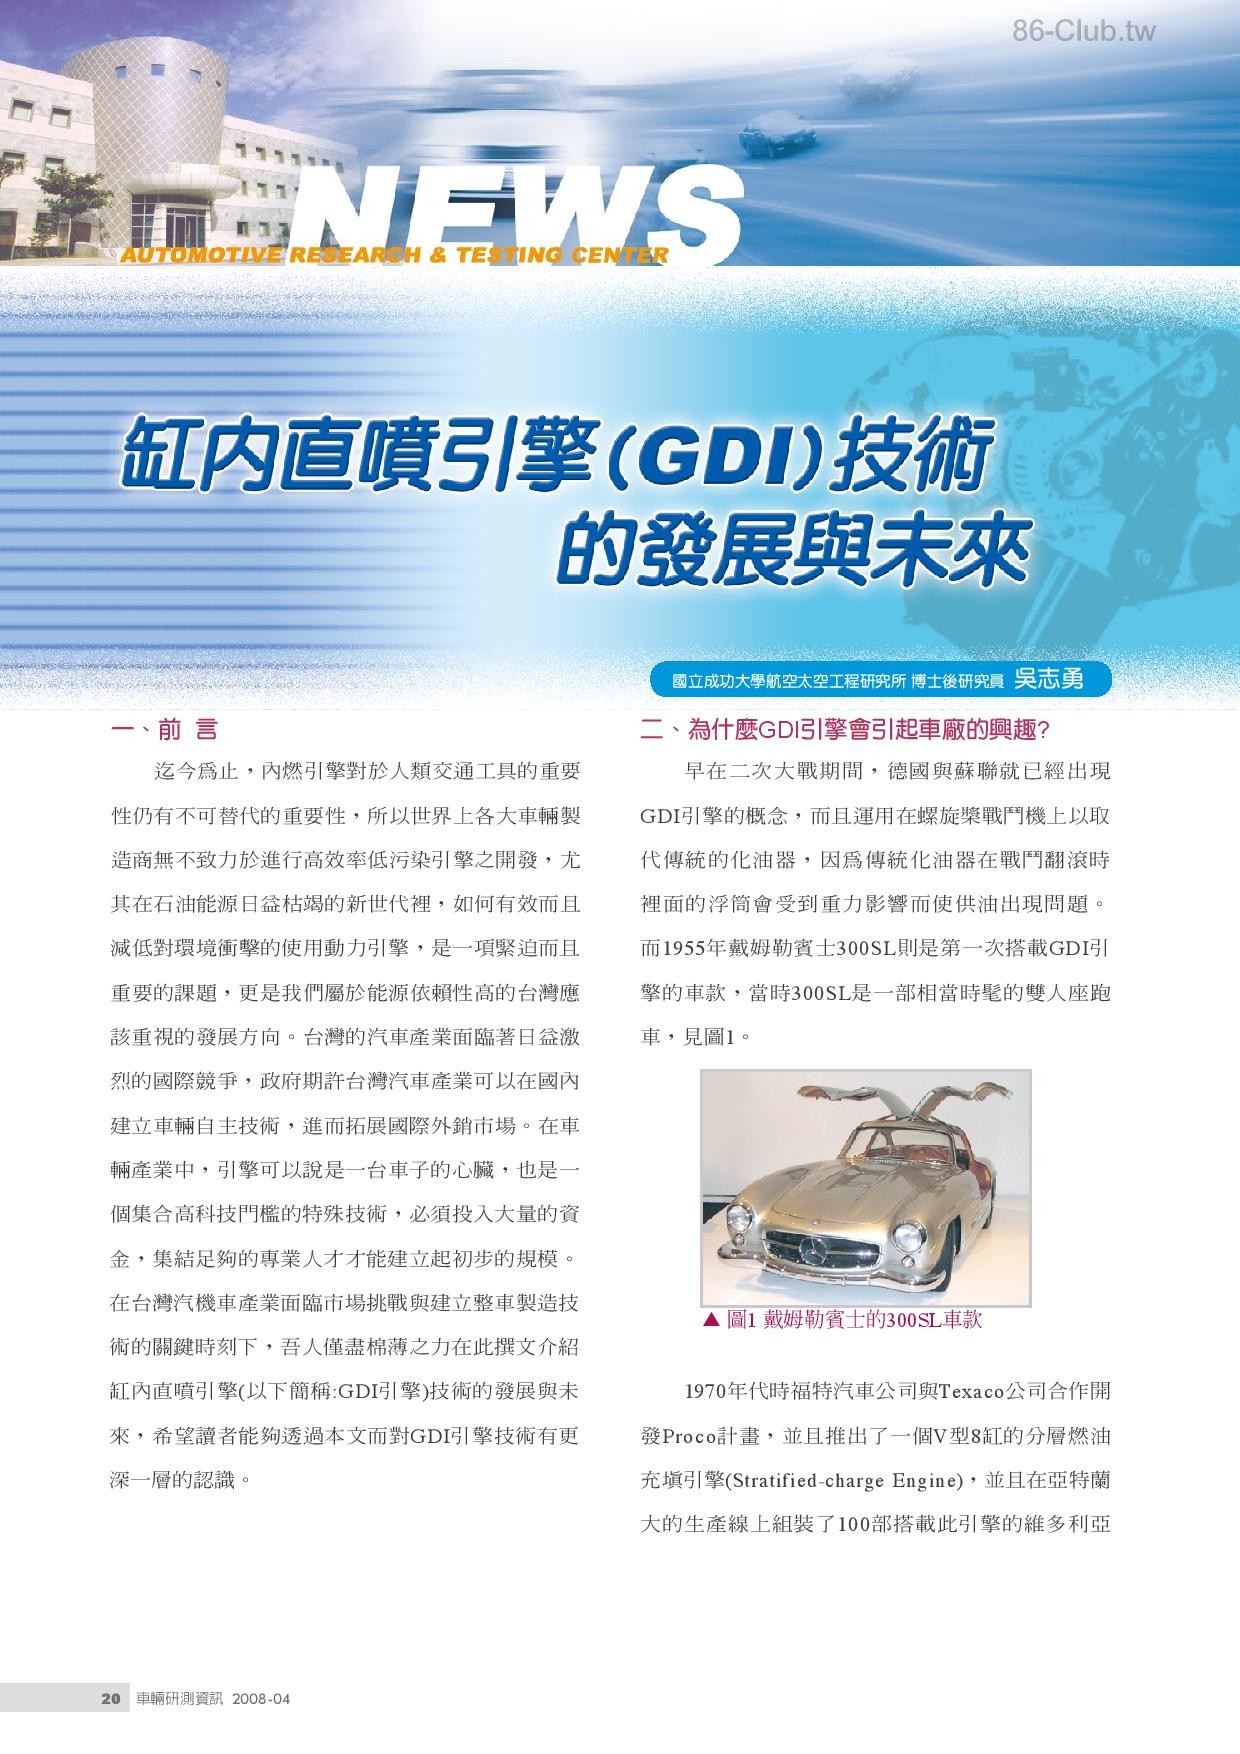 缸內直噴引擎（GDI）技術的發展與未來-page-001.jpg